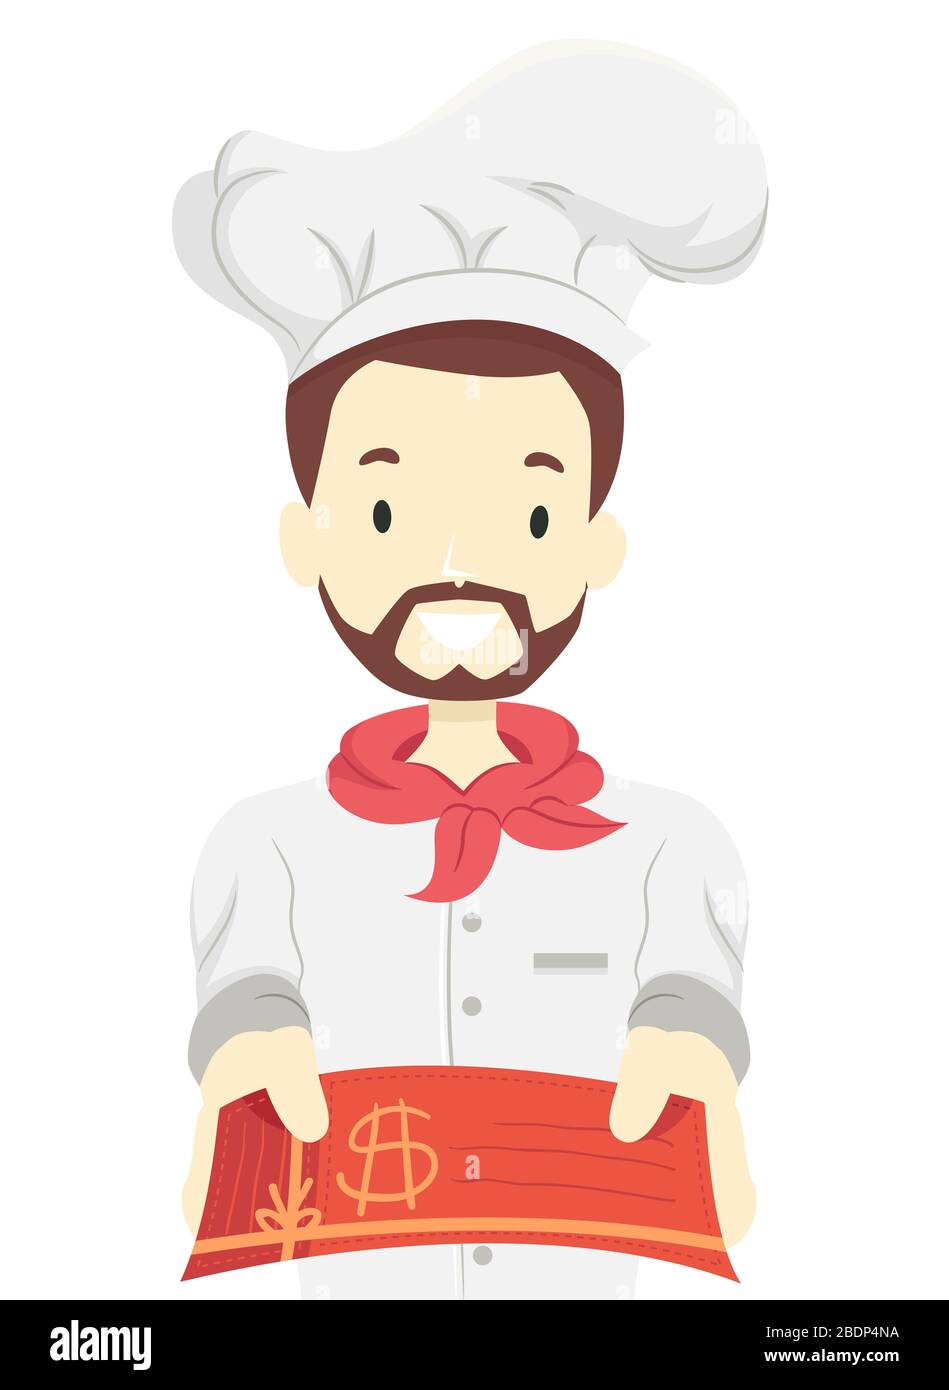 Illustration d'un homme portant un uniforme de chef et donnant une carte-cadeau pour son restaurant Banque D'Images